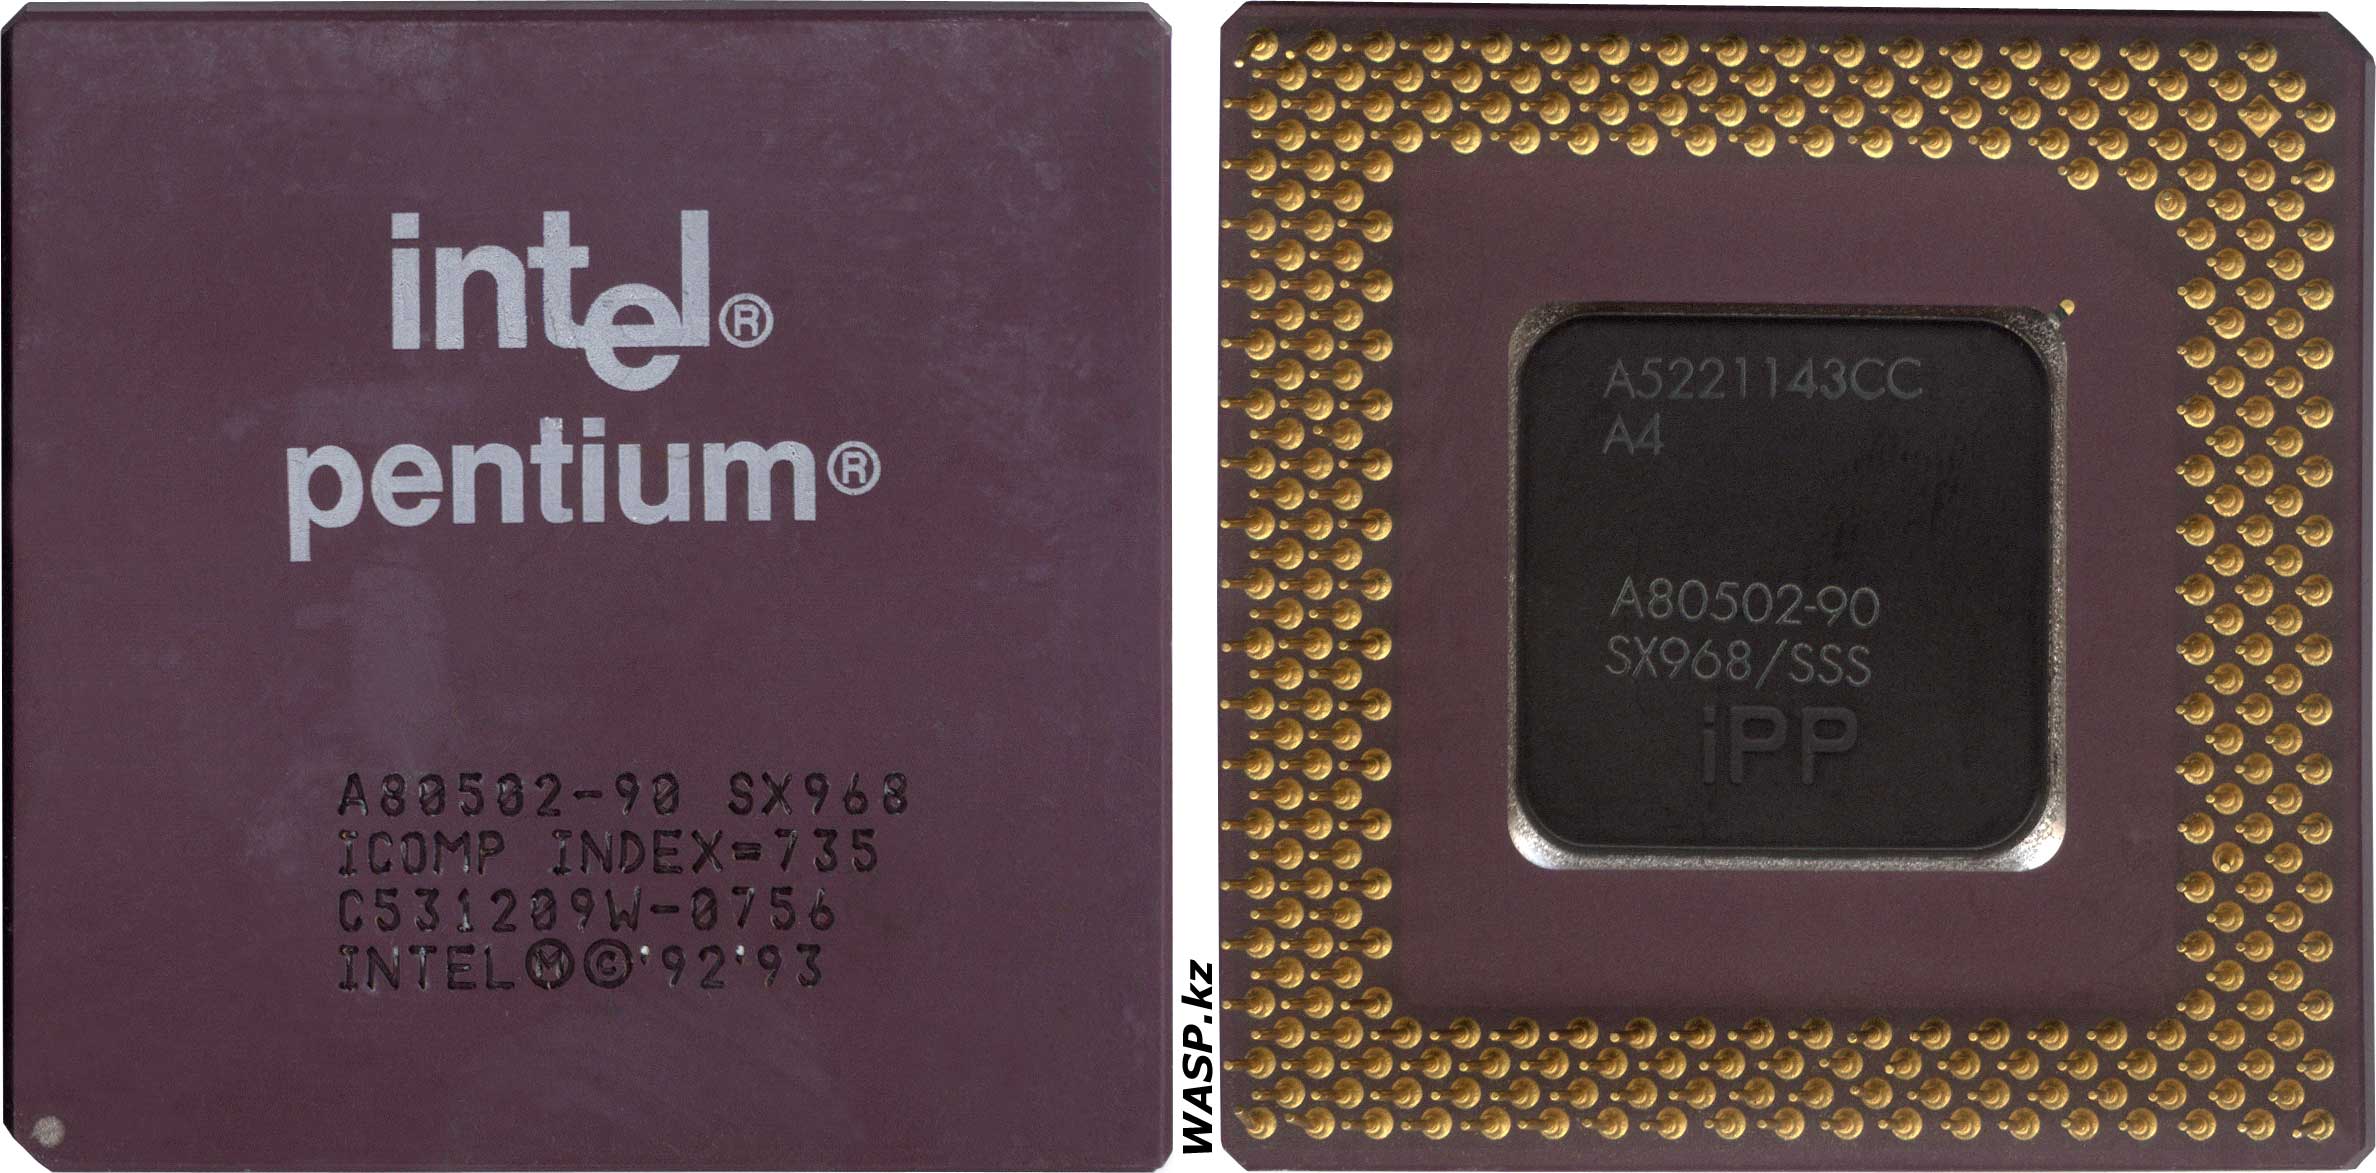 A5221143CC A4 iPP P54C Pentium второго поколения